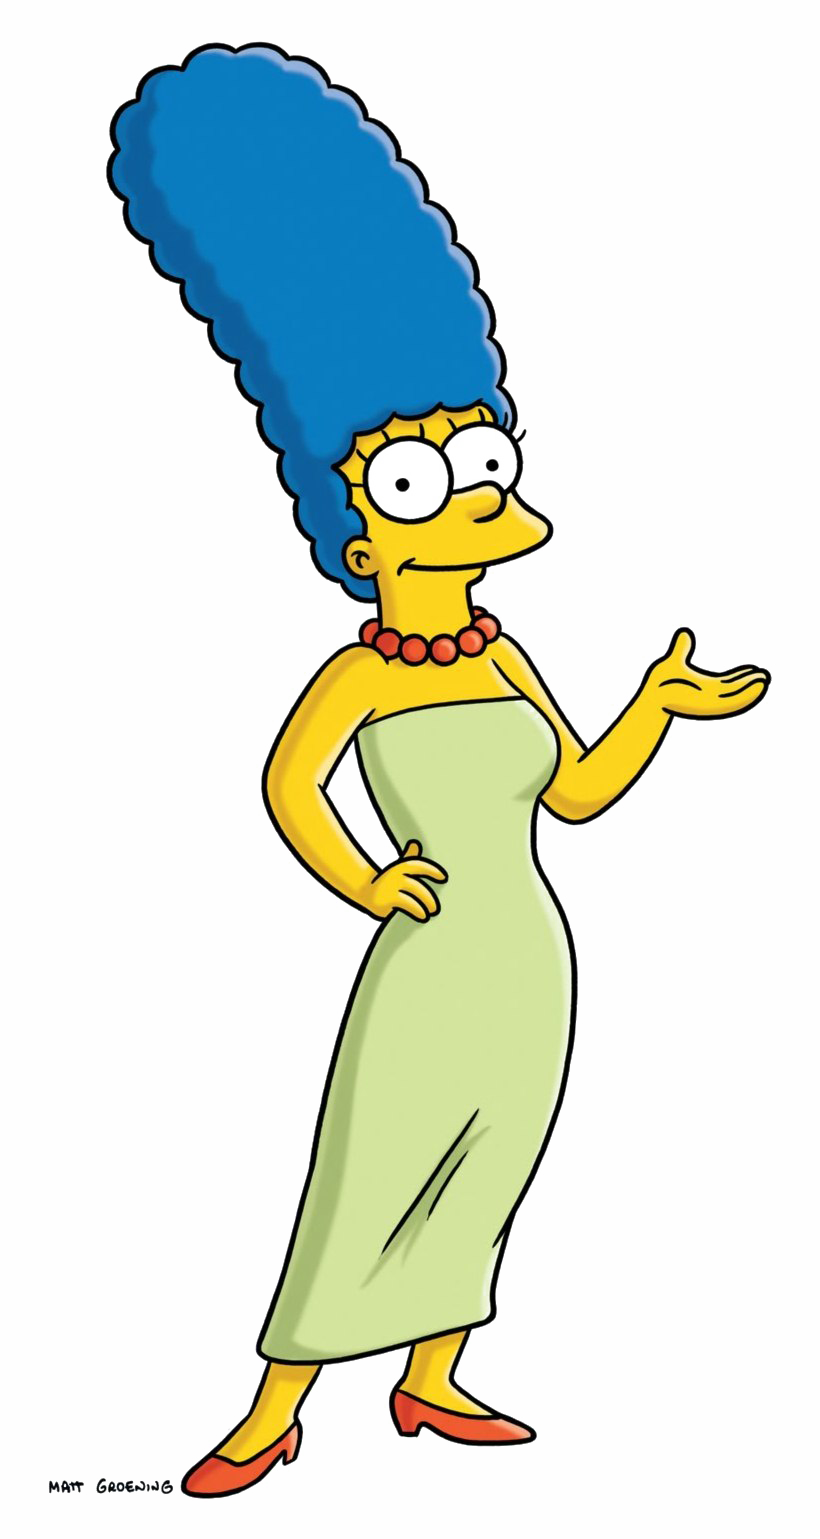 Marge прозрачный файл